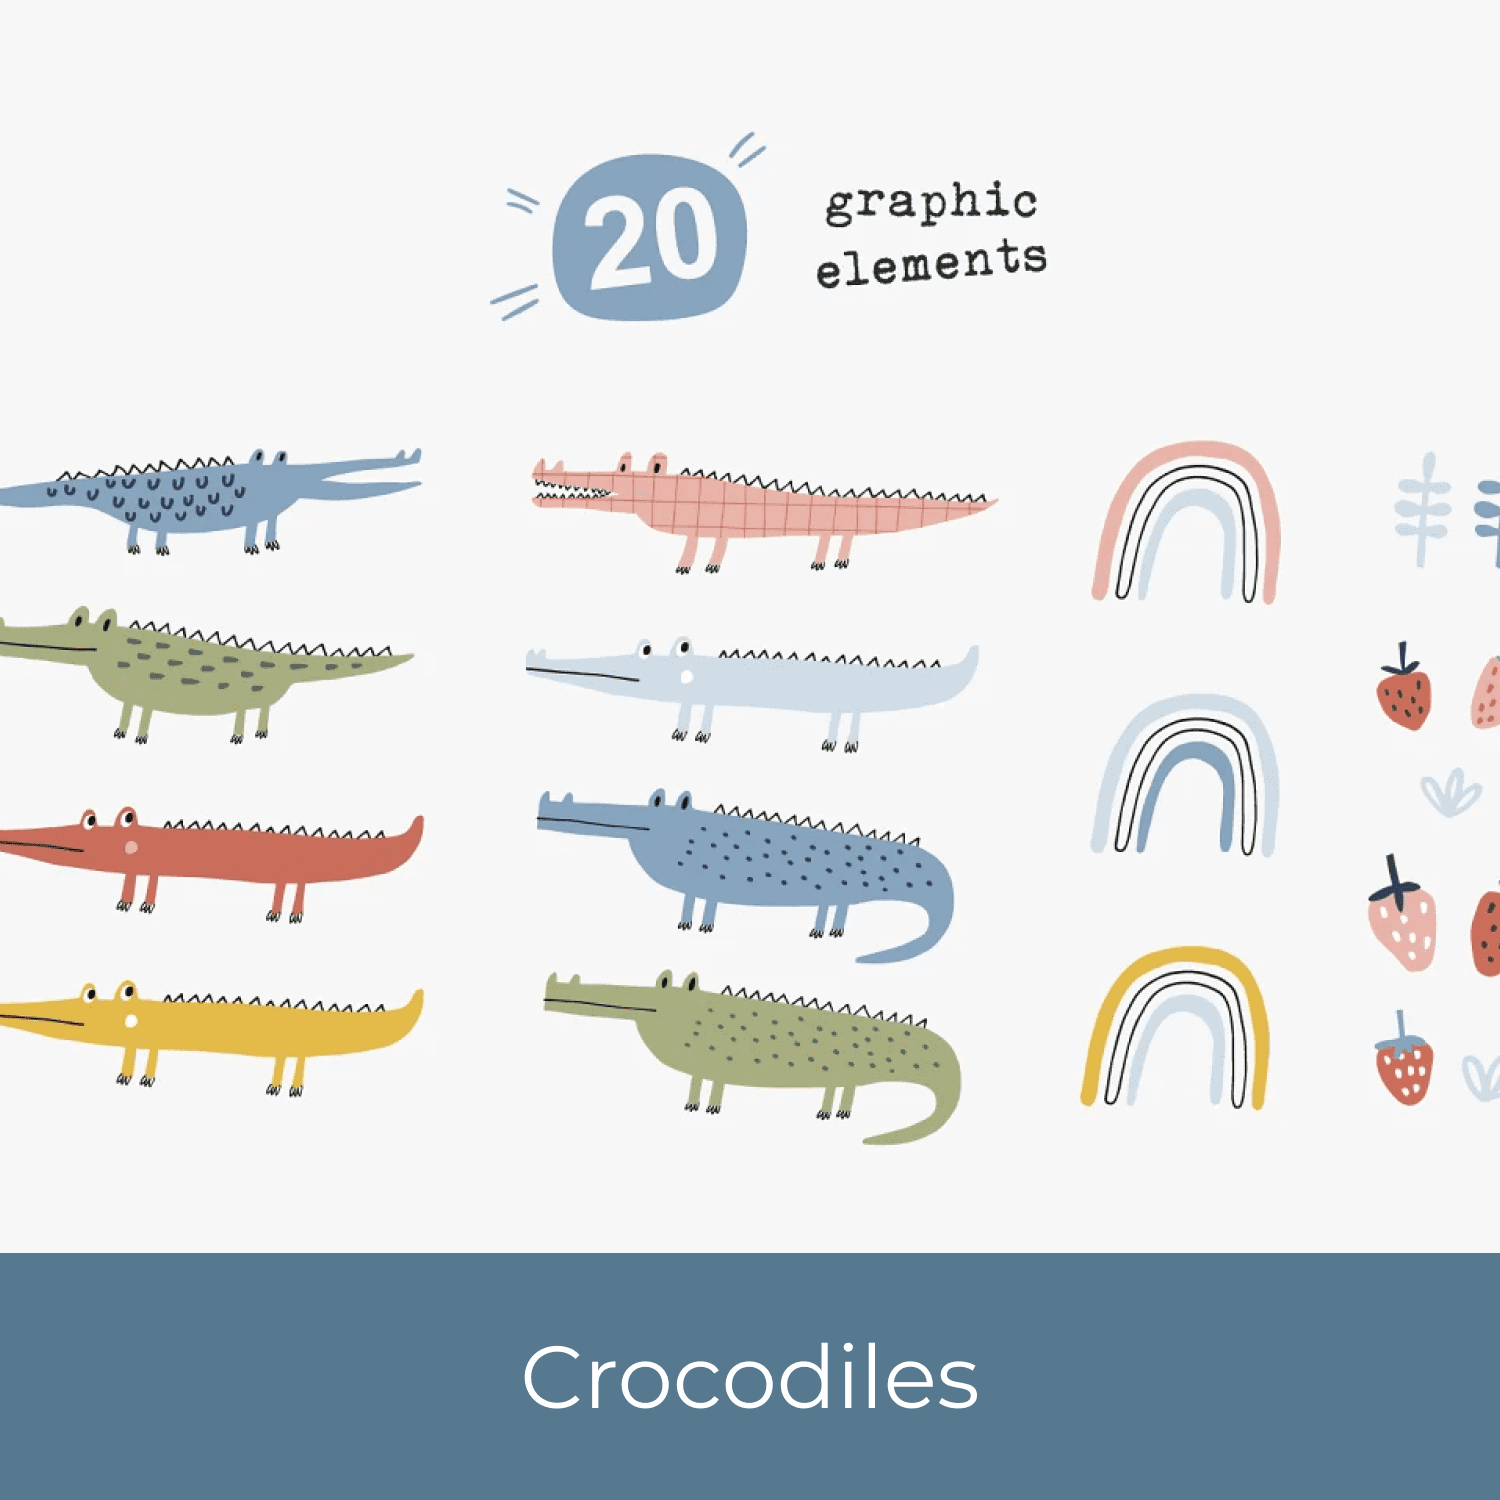 Crocodiles cover.